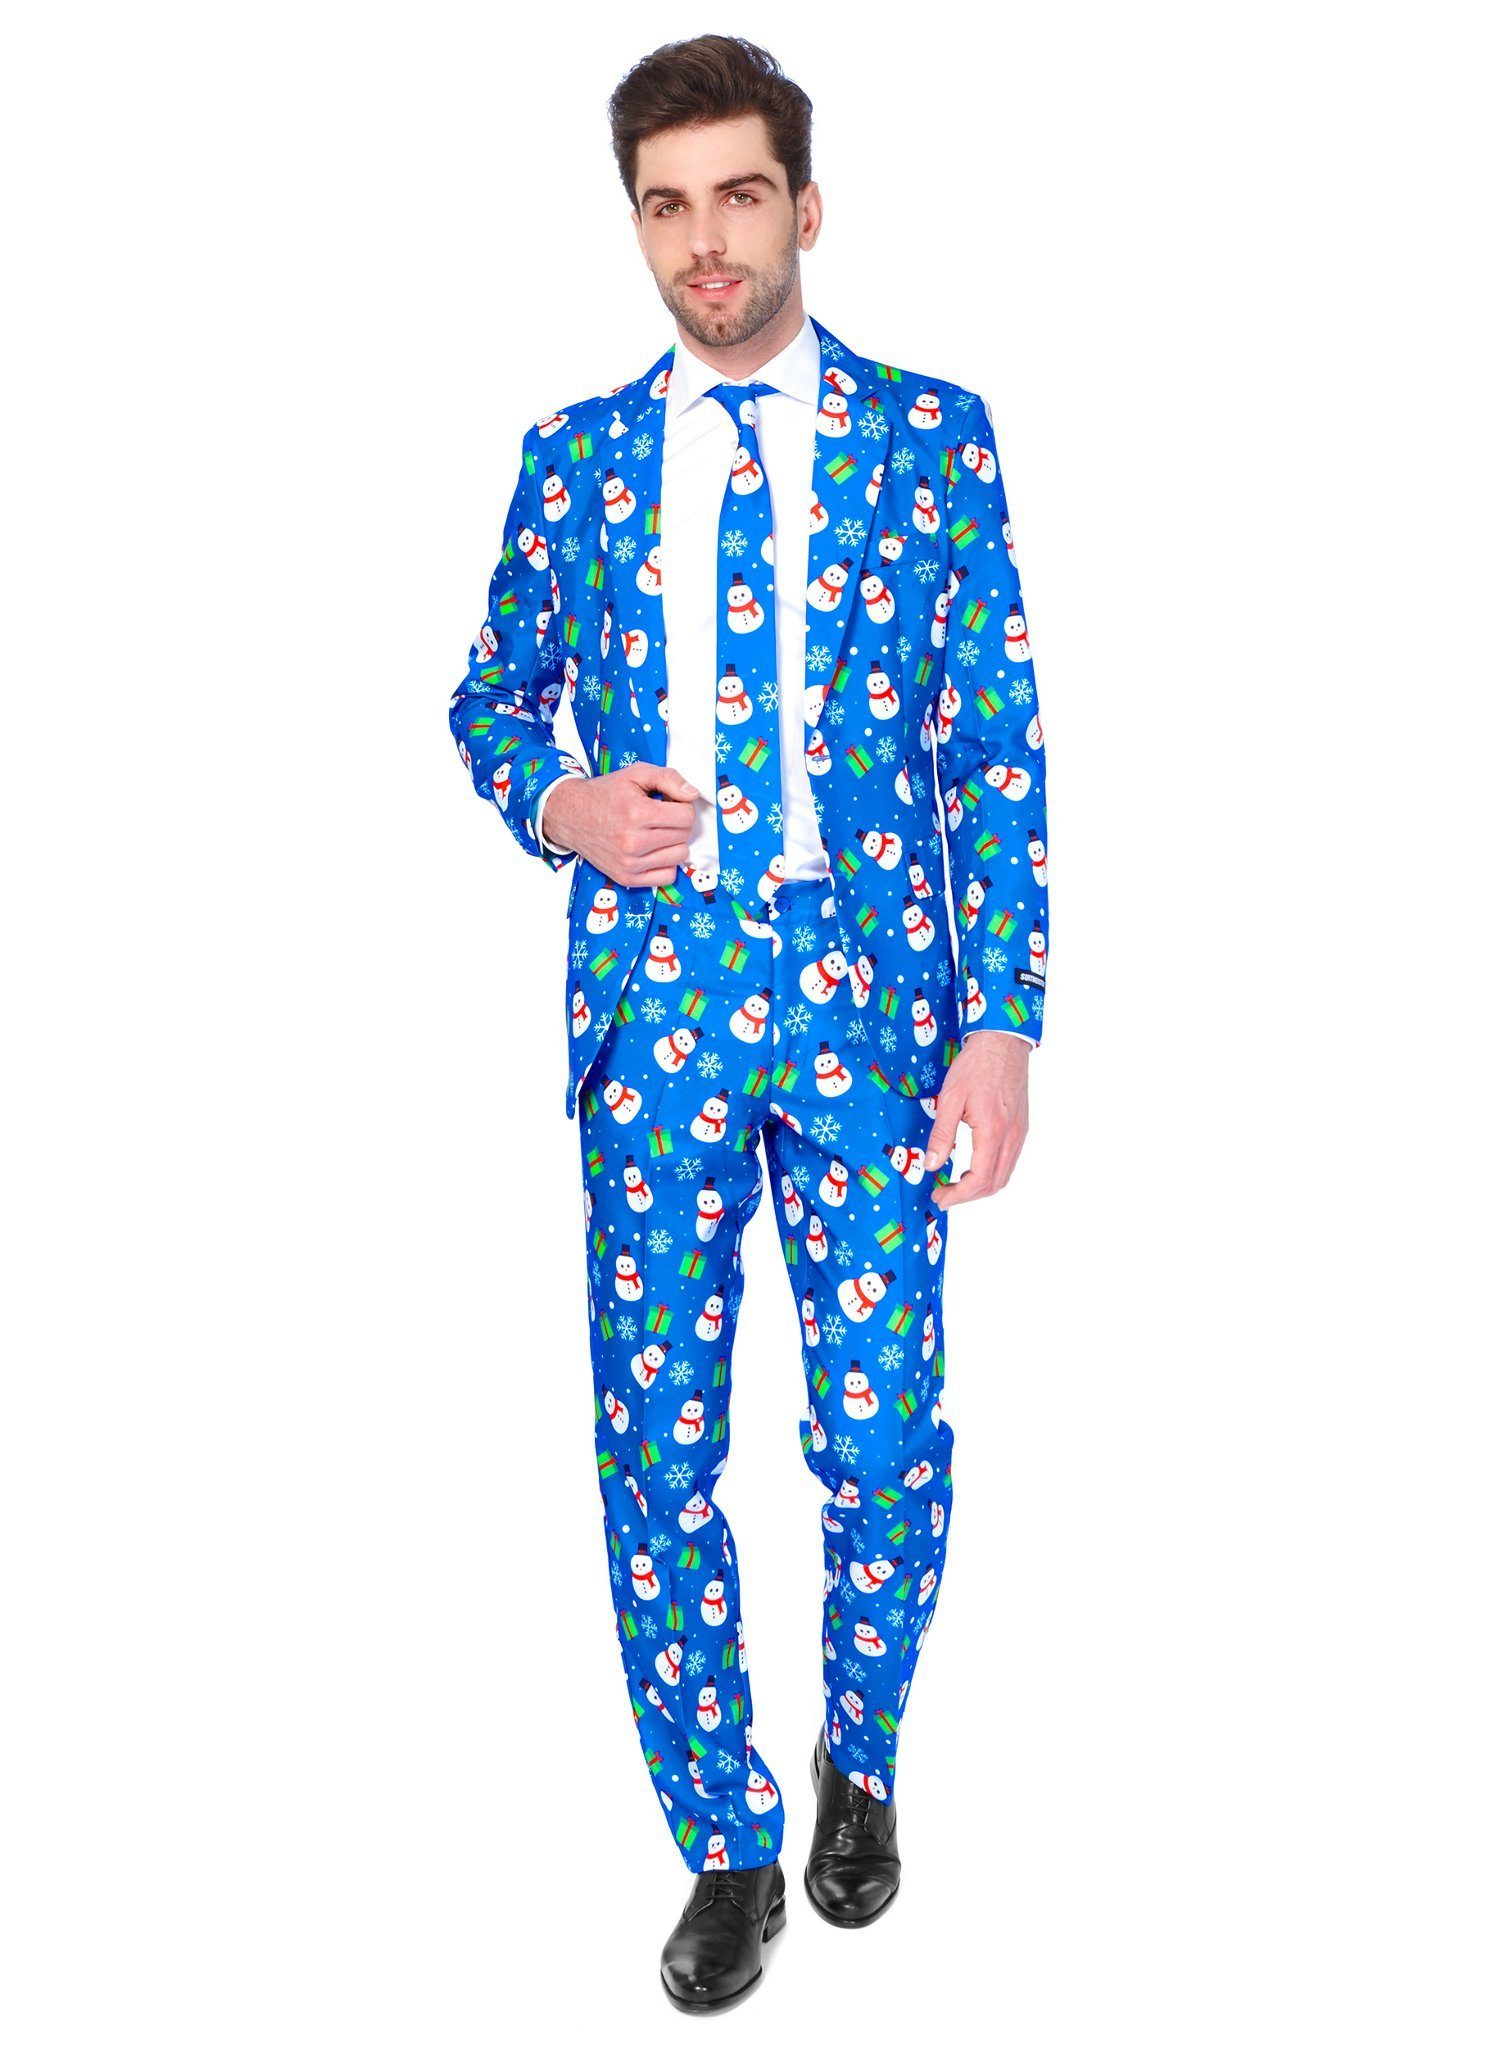 SuitMeister Partyanzug SuitMeister Blue Snowman, Für festliche Typen: cooler Anzug für die Weihnachtsfeier